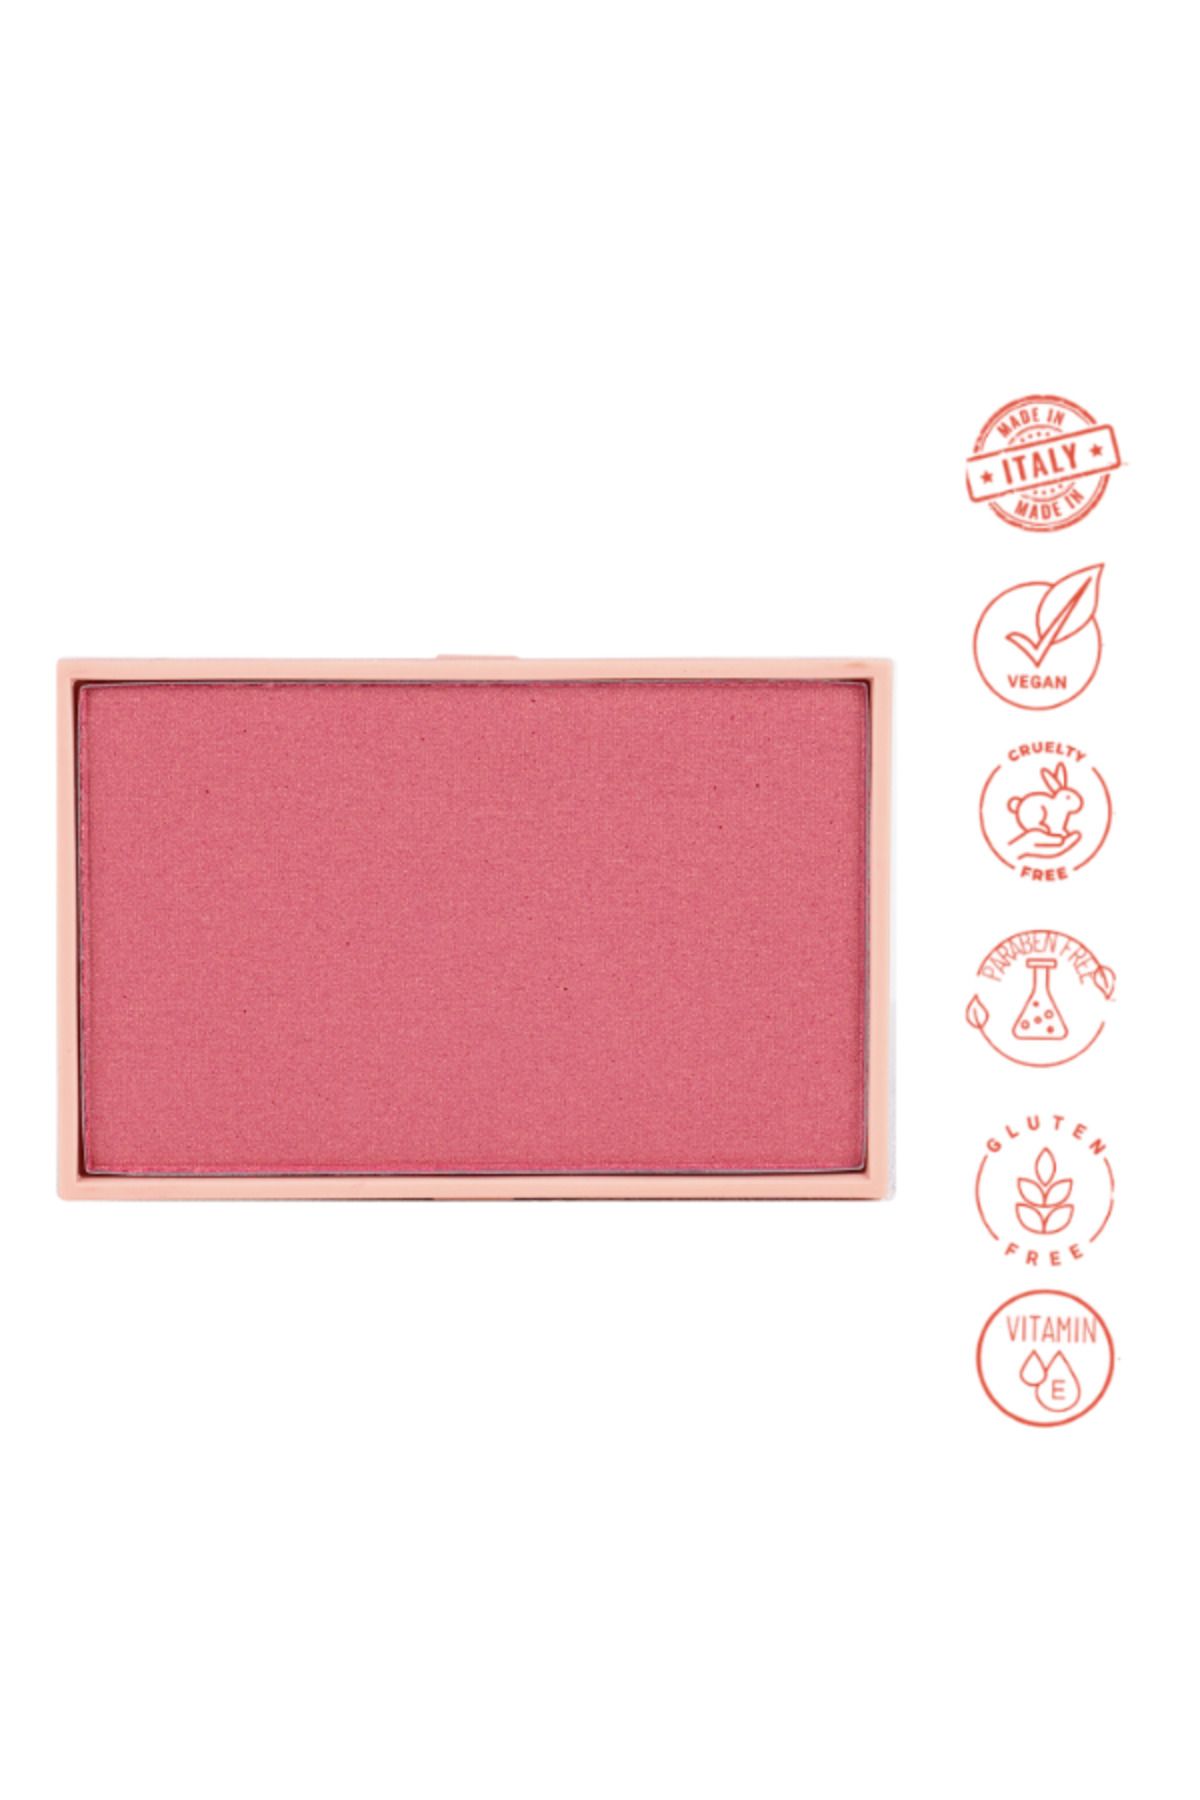 Dora Joy Yedek / Refill Işıltılı Toz Allık 03 Shine Kissed Powder Blush Vegan E Vitaminli